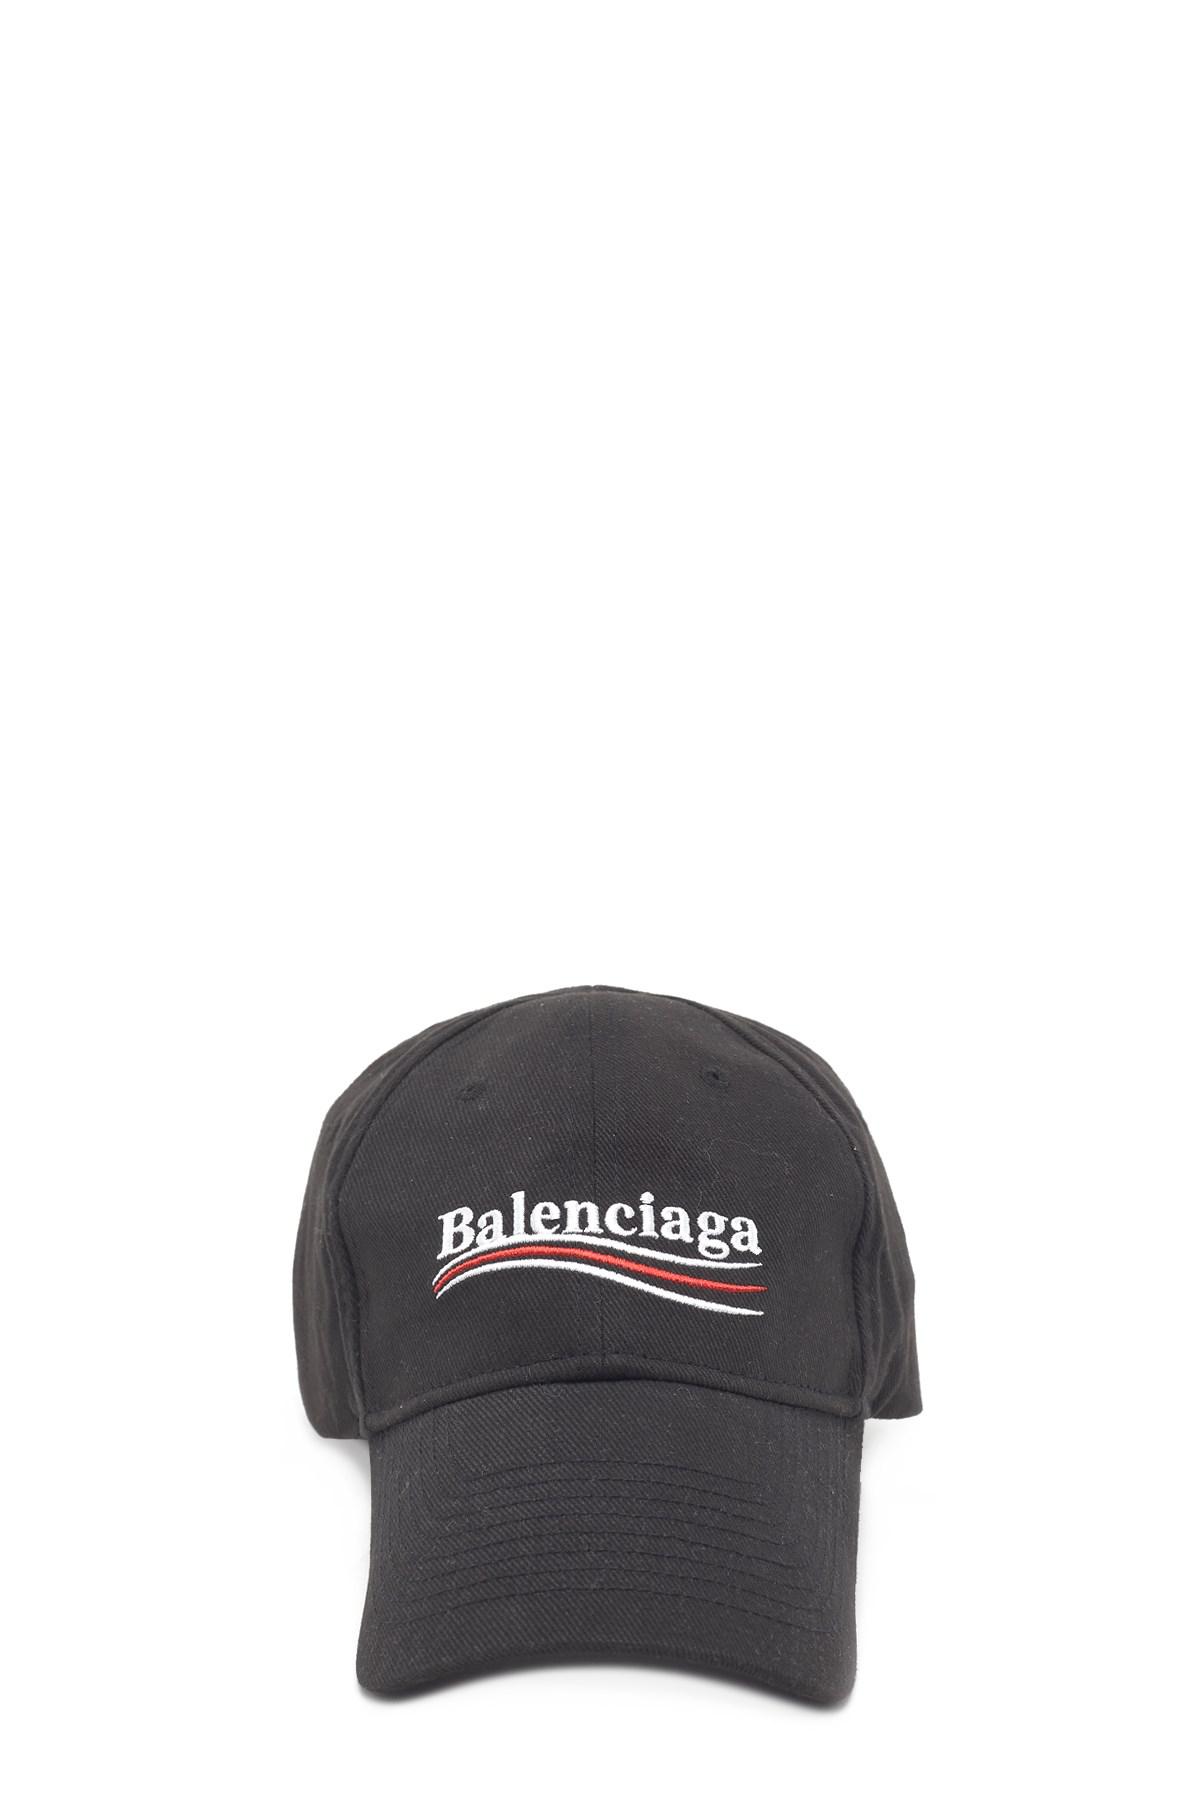 Balenciaga Cotton New Political Logo Baseball Cap in Black/White 